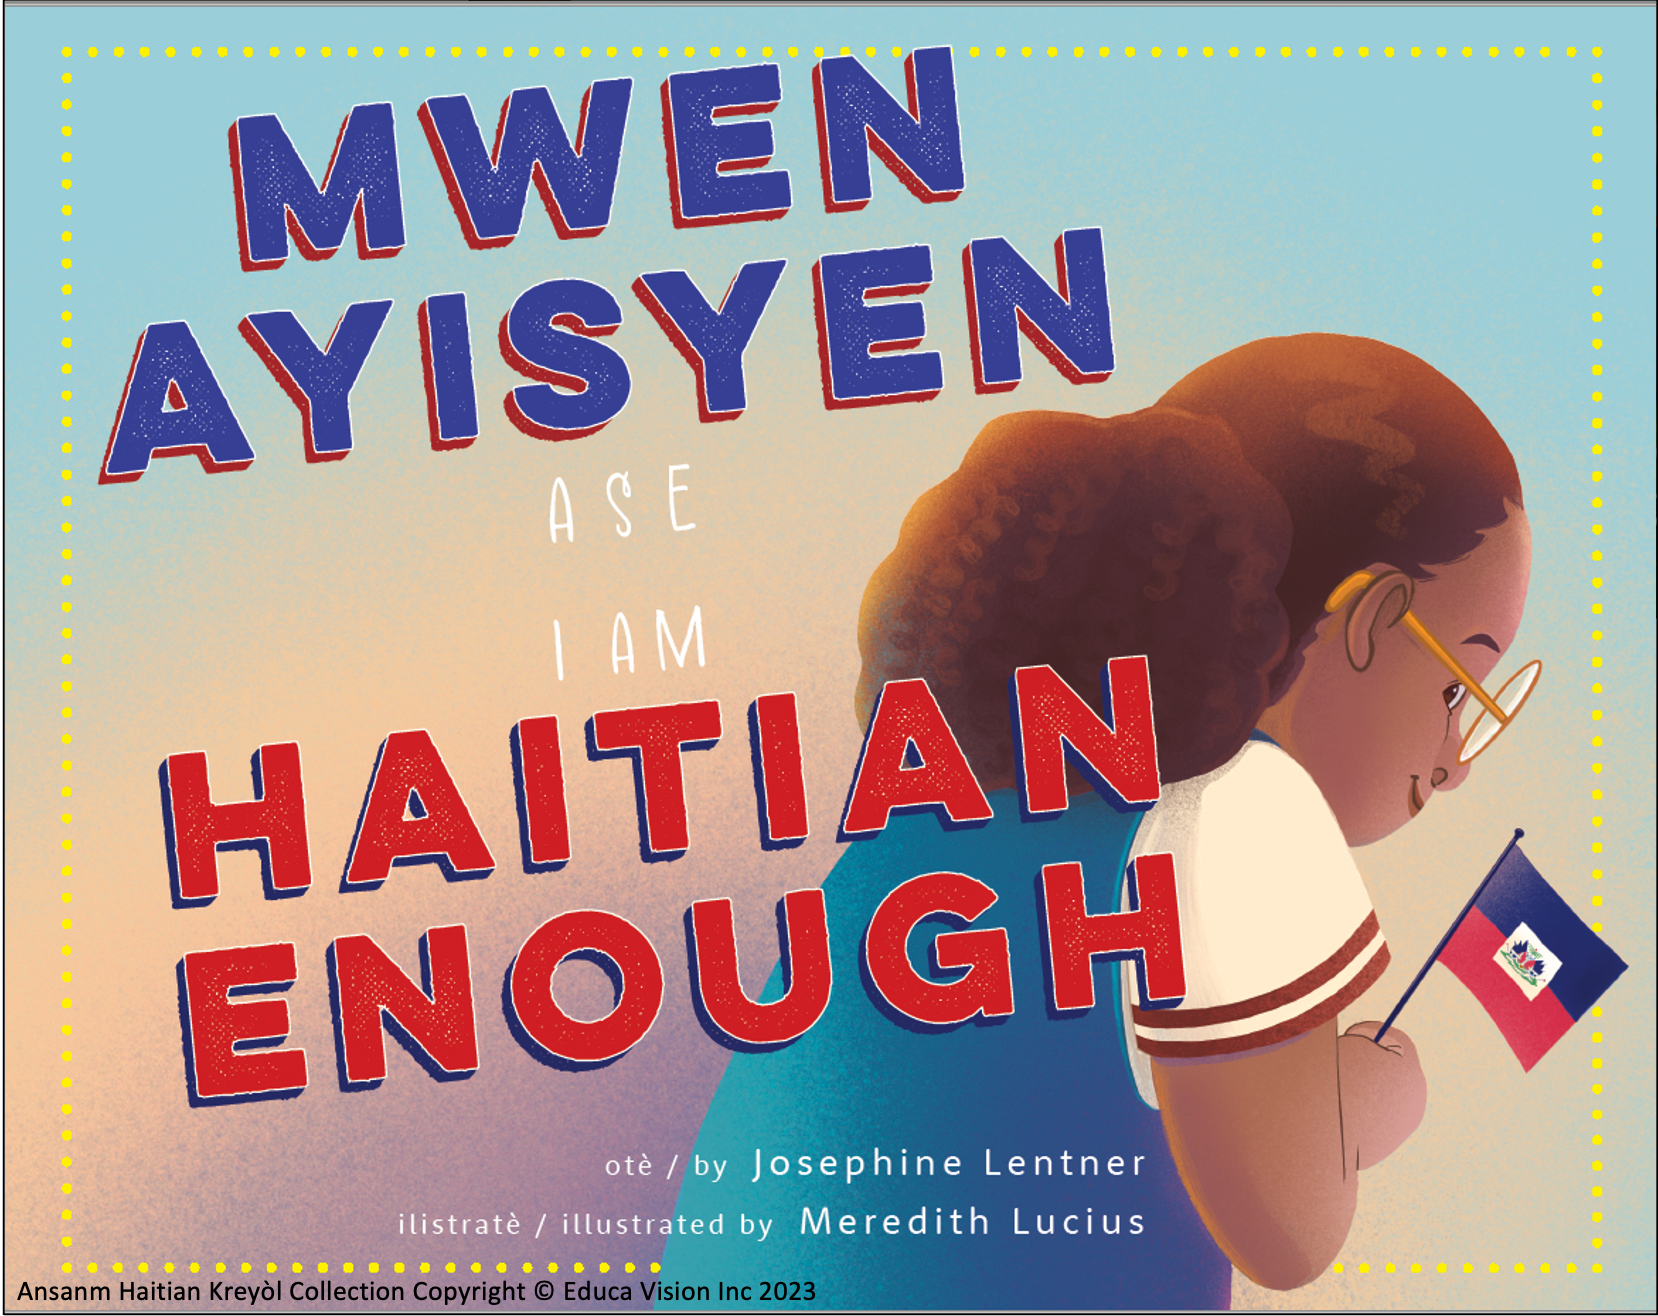 Mwen se Ayisyen ase / I am Haitian Enough